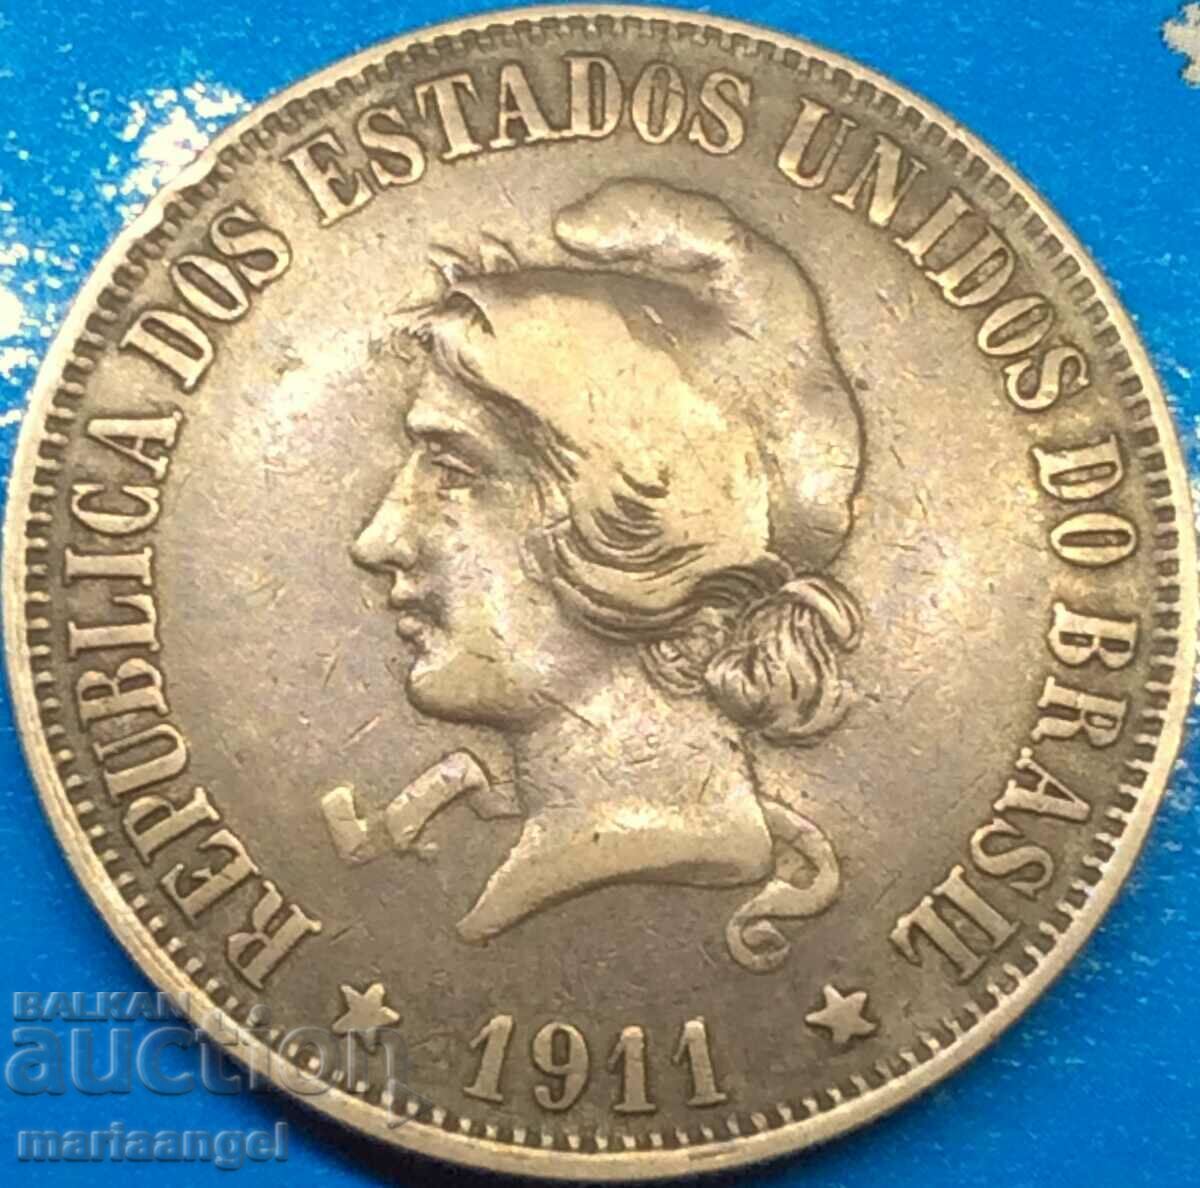 Бразилия 2000 рейса 1911 20 г сребро